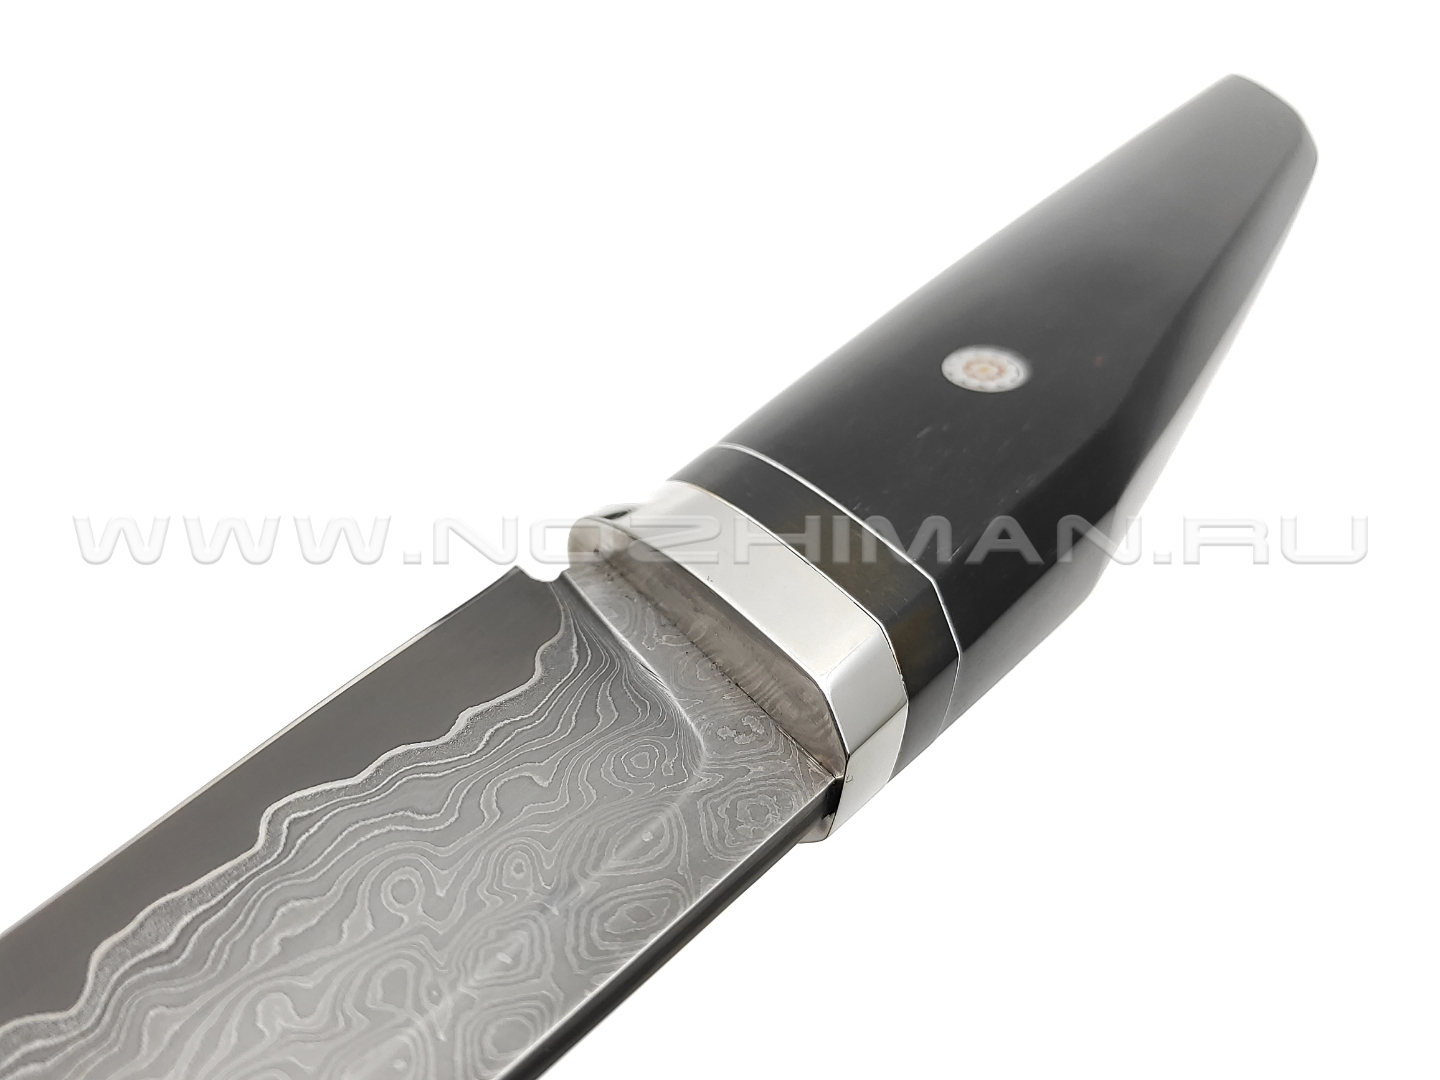 Кузница Васильева нож "НЛВ110" ламинат Vanadis 8, рукоять гренадил, никель, карболит